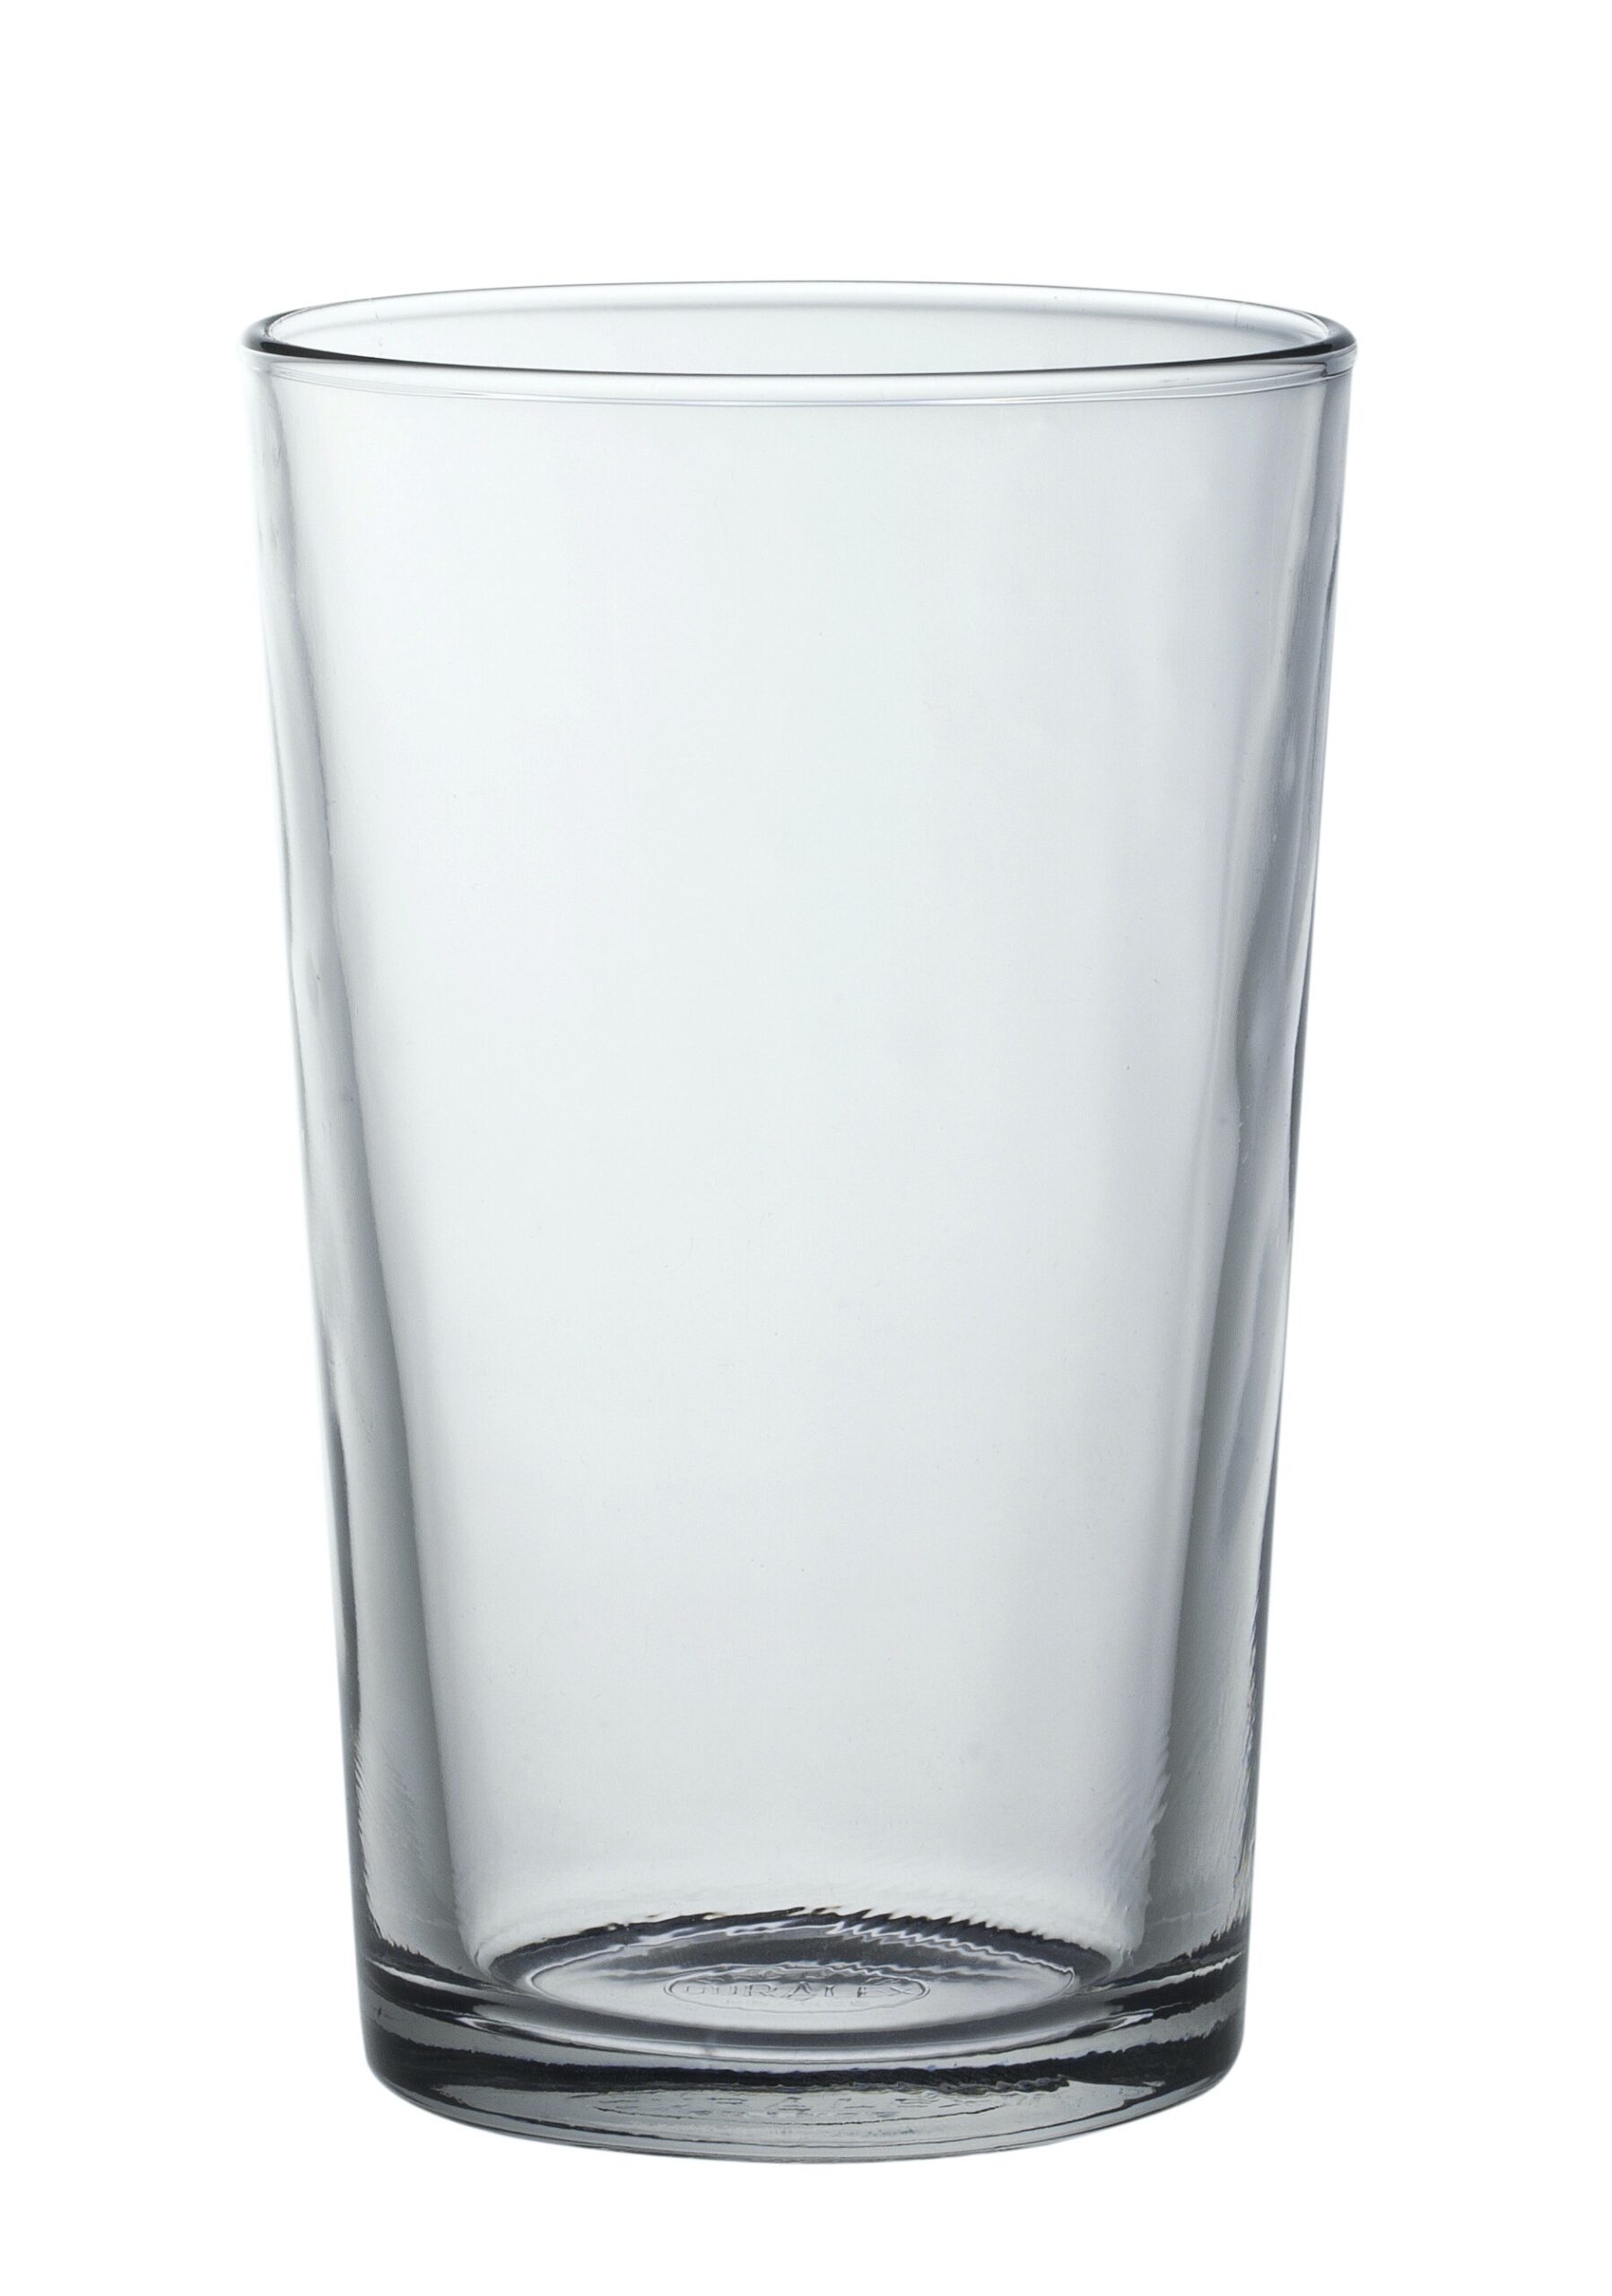 Duralex Chope Unie Tumbler, Trinkglas, 330ml, Glas gehärtet, transparent, 6 Stück